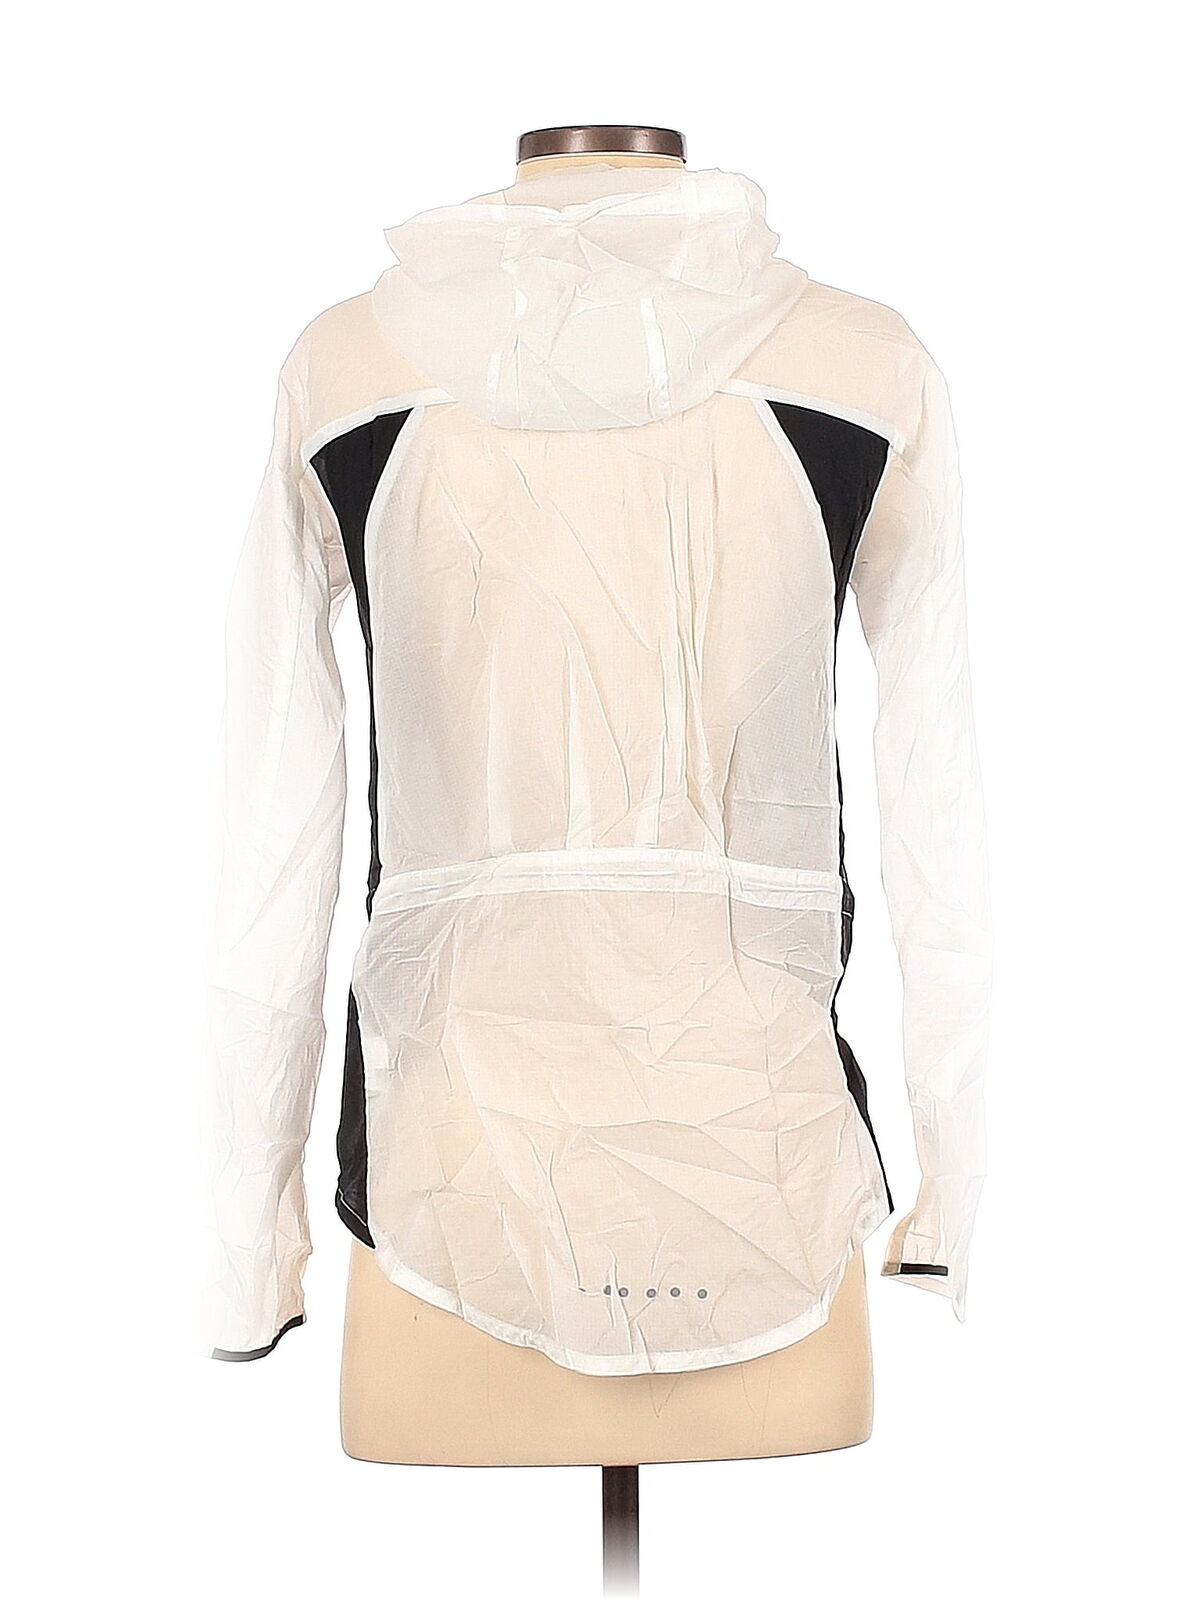 Nike Women White Track Jacket S - image 2